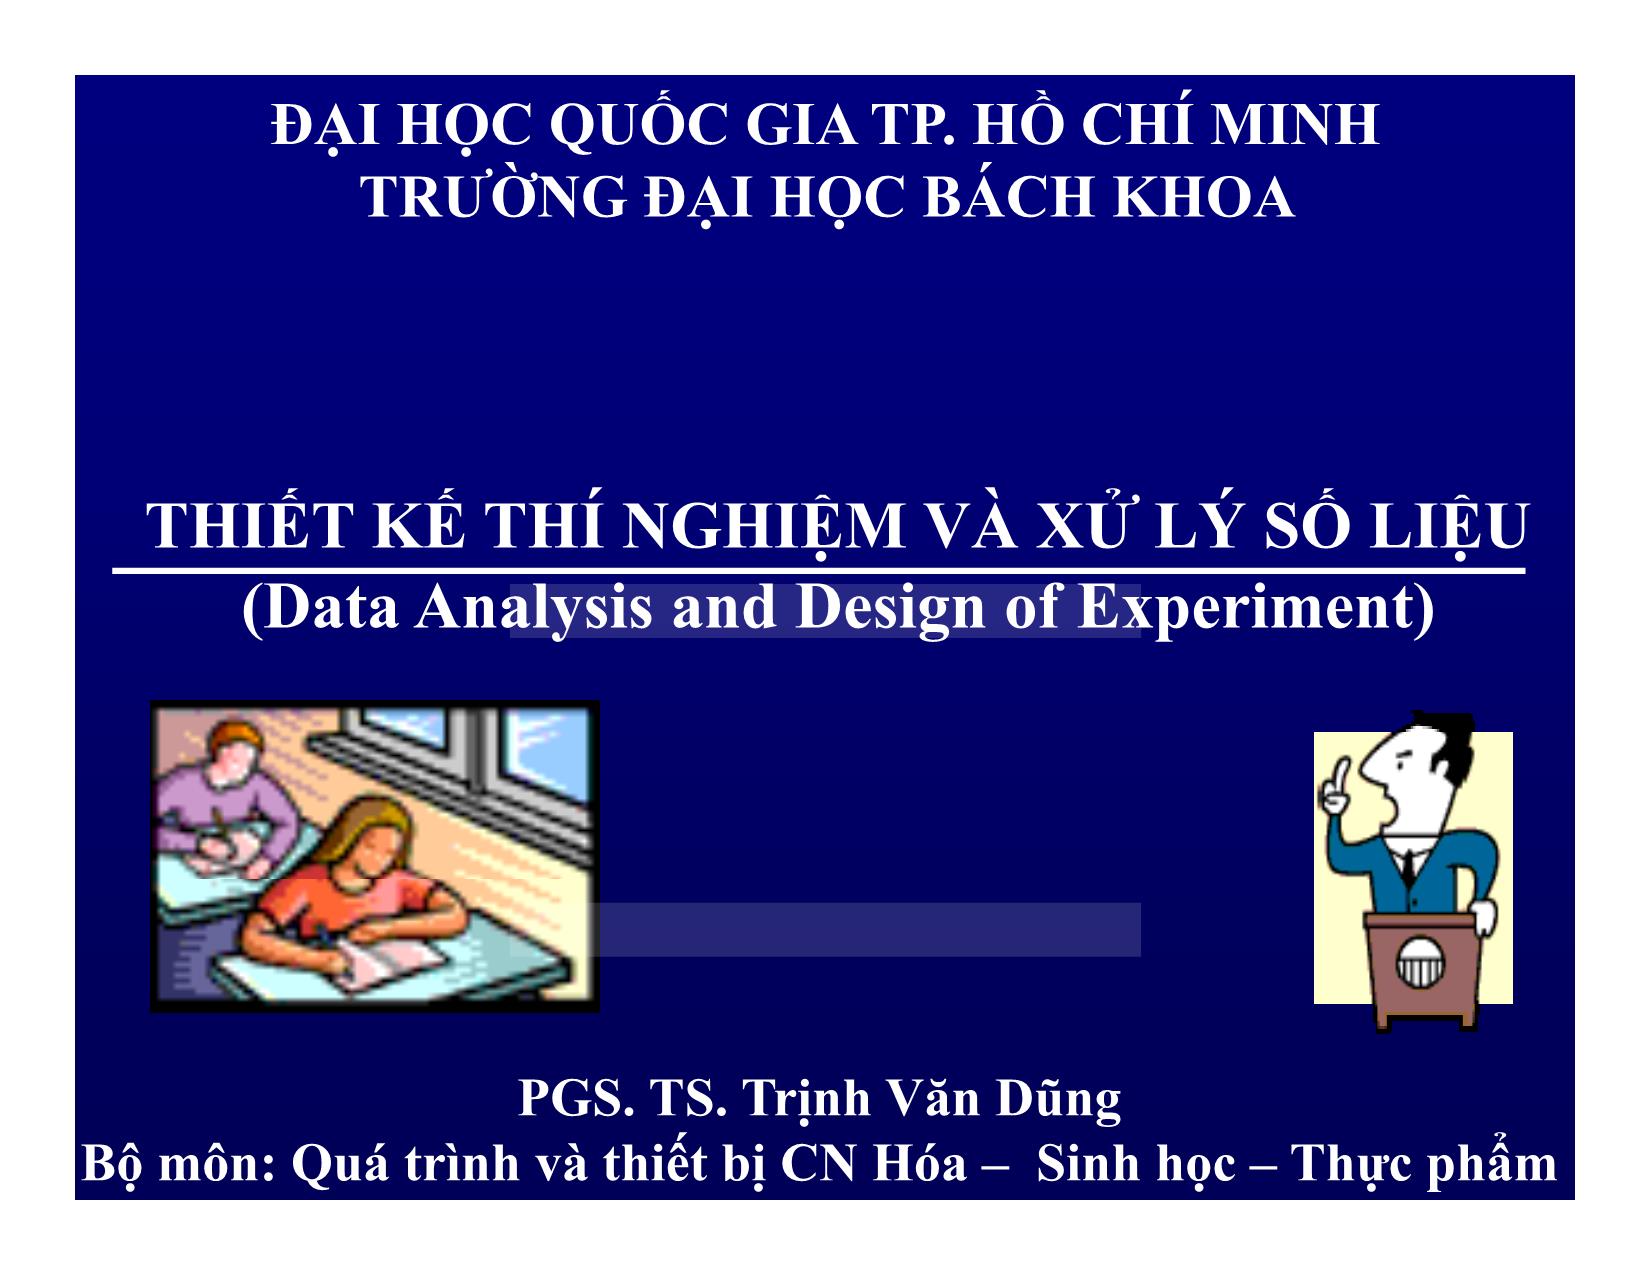 Bài giảng Thiết kế thí nghiệm và xử lý số liệu - Chương: Xử lý sơ cấp số liệu thí nghiệm - Trịnh Văn Dũng trang 1